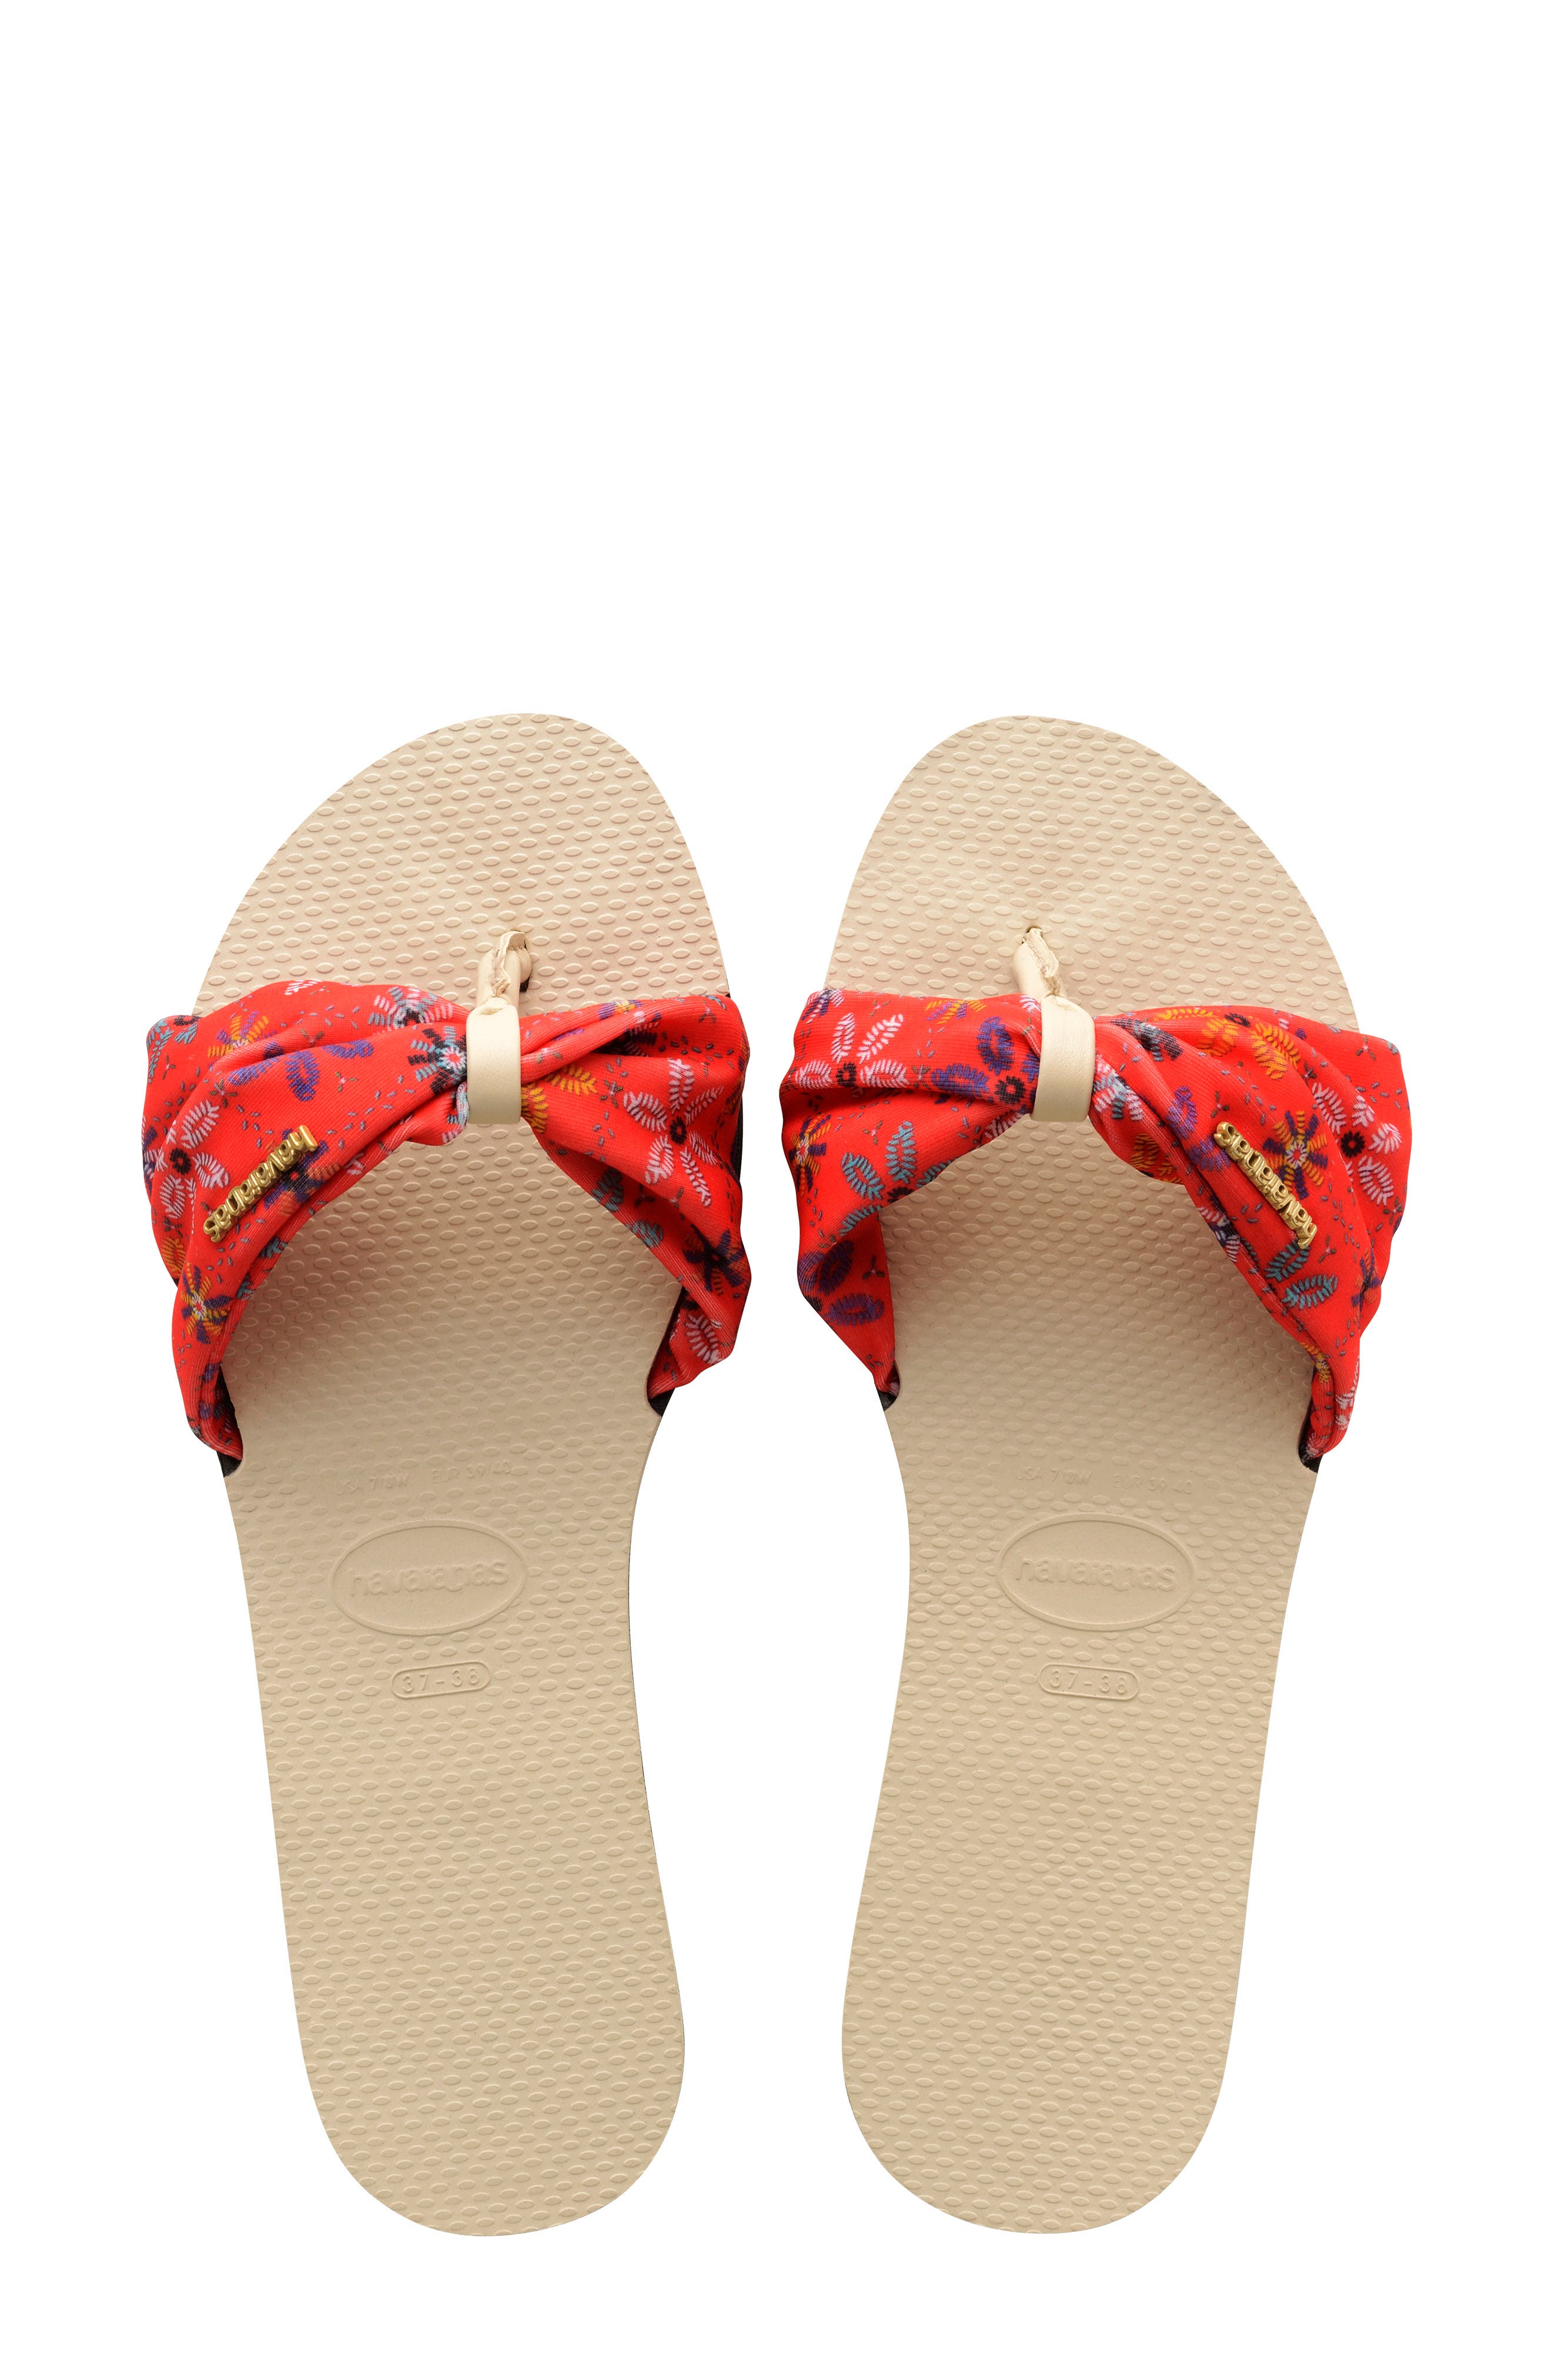 red havaianas flip flops